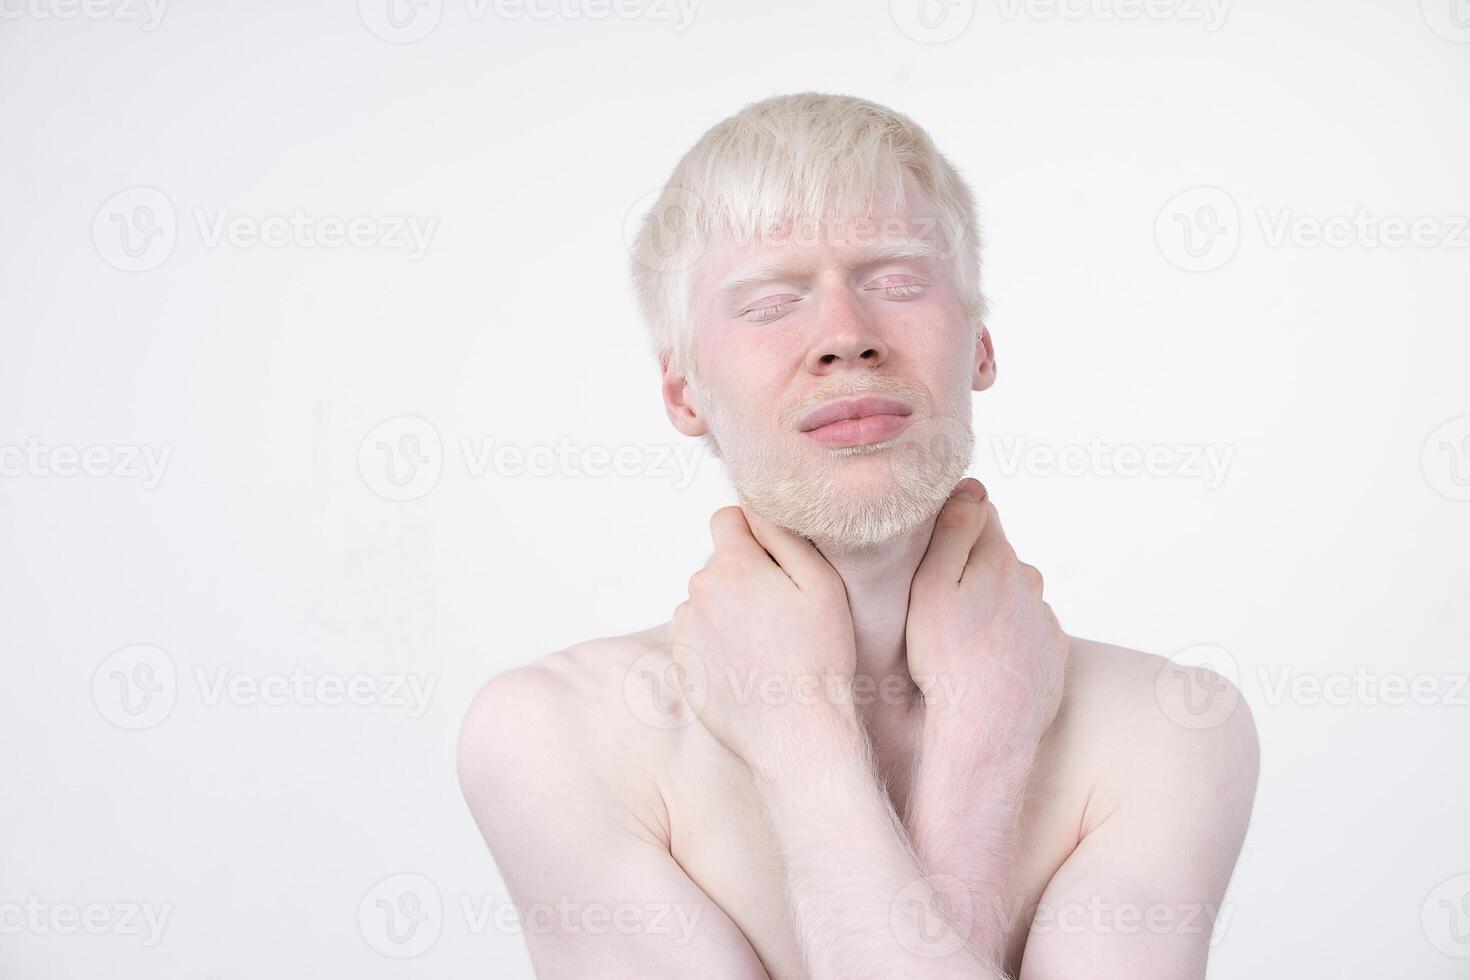 albinisme albino Mens in studio gekleed t-shirt geïsoleerd Aan een wit achtergrond. abnormaal afwijkingen. ongebruikelijk uiterlijk foto